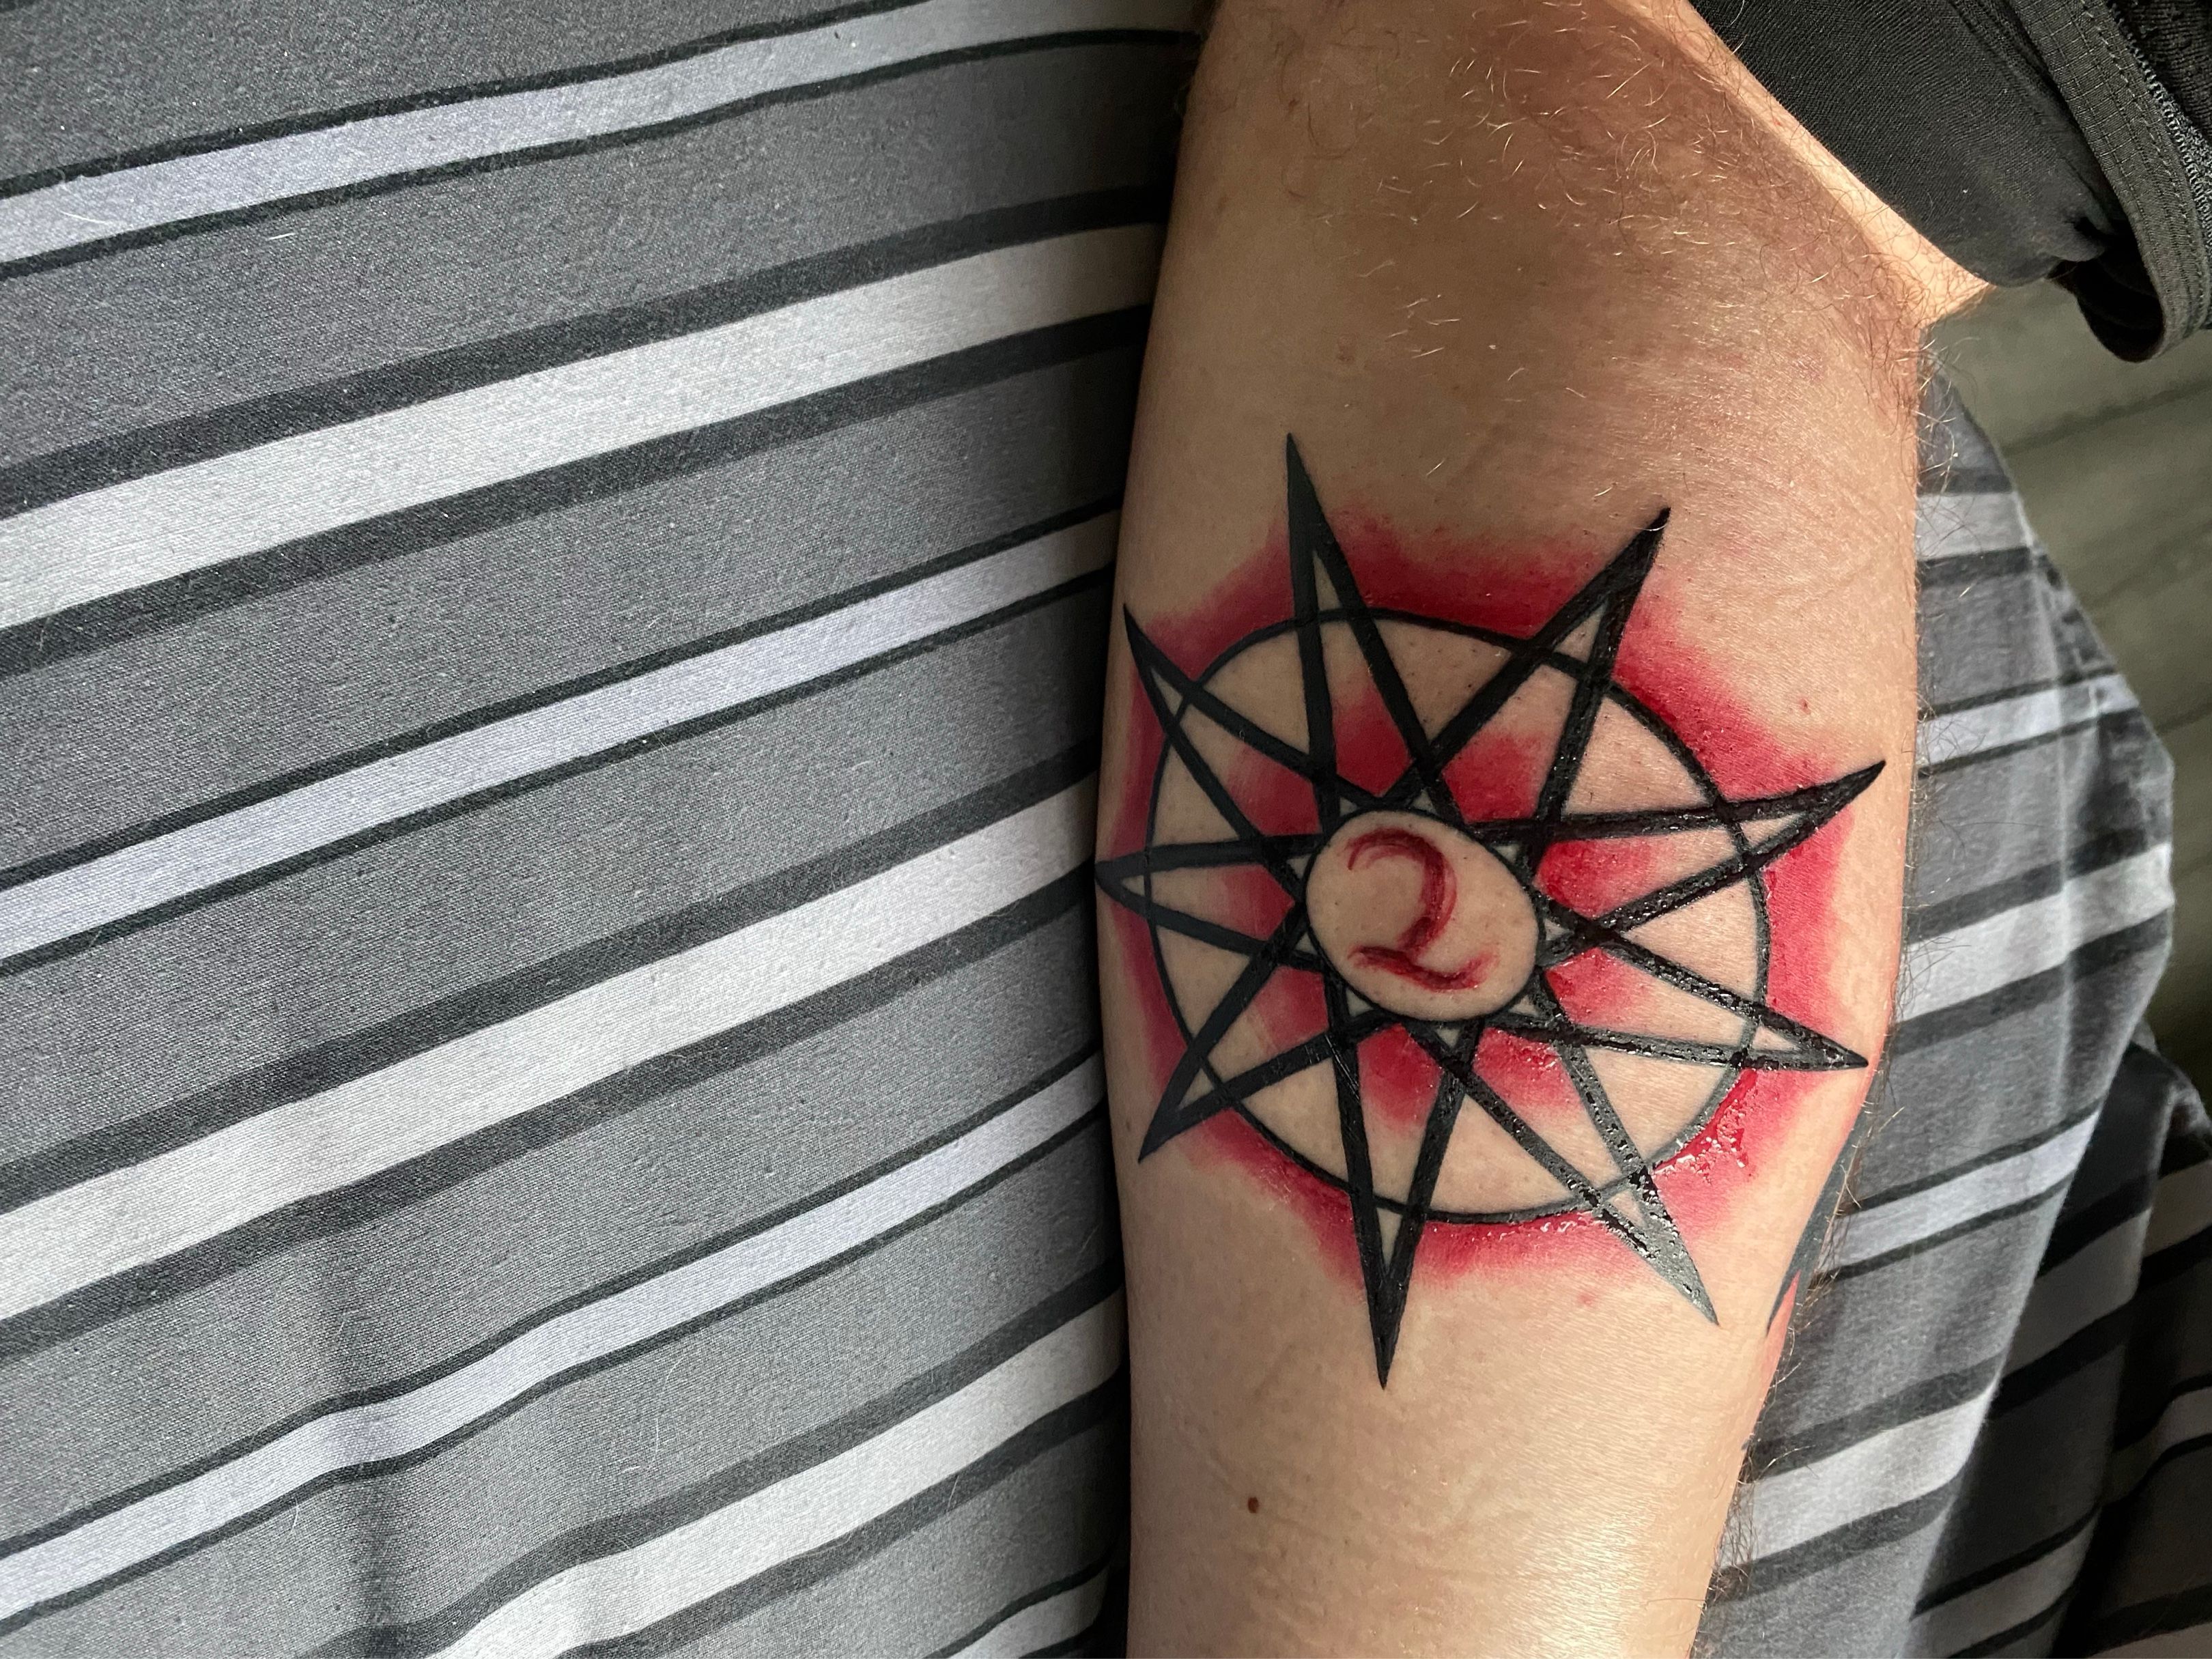 slipknot star tattoos